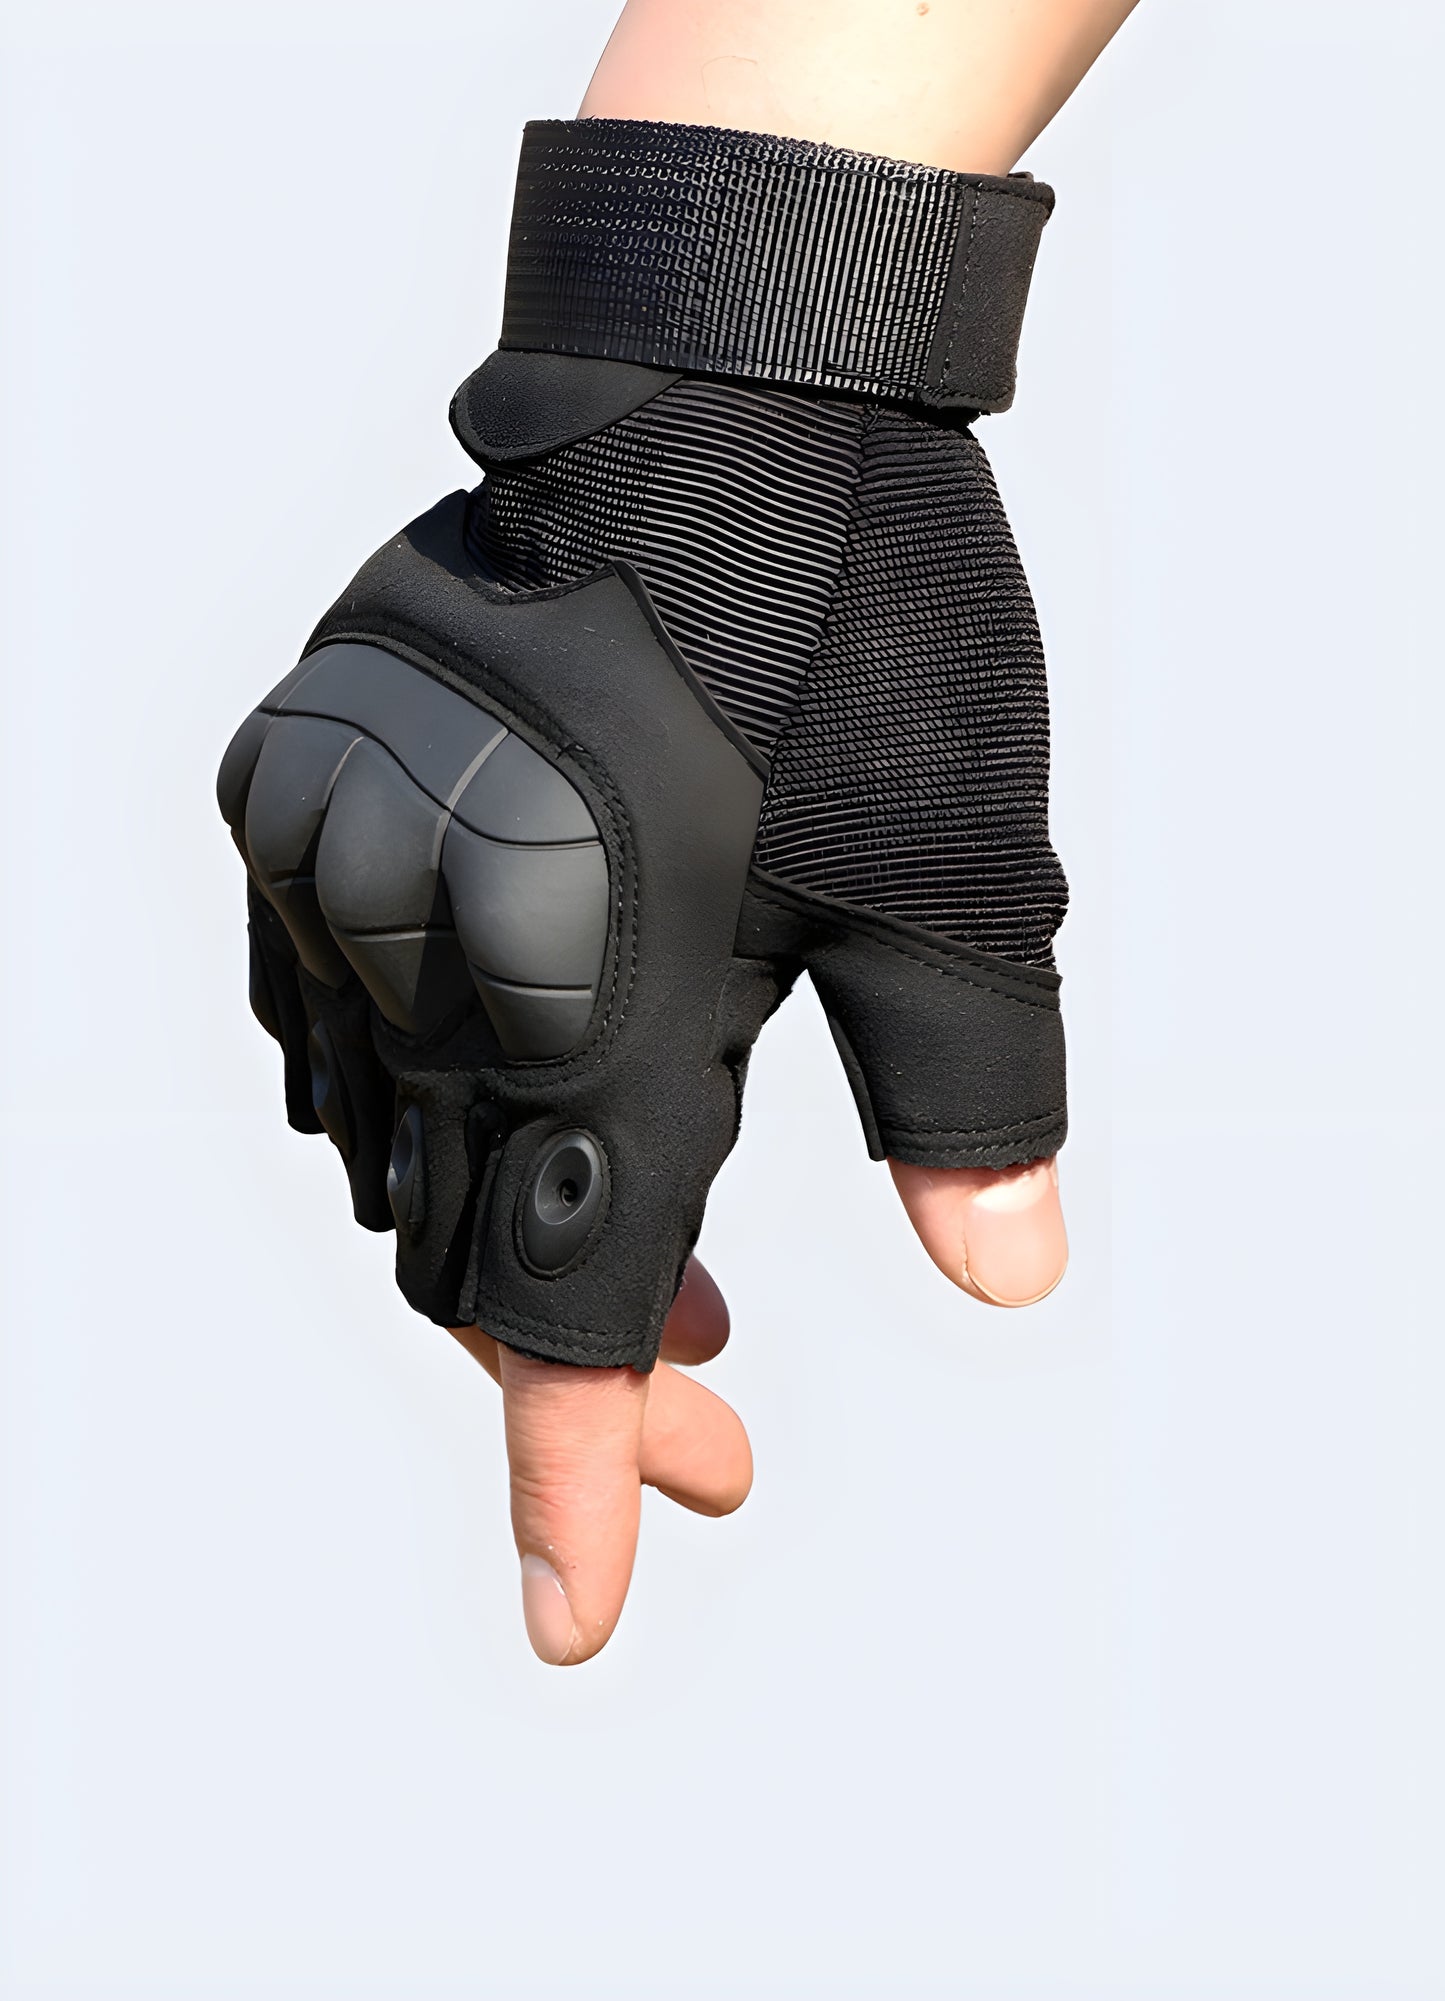 Men wearing techwear fingerless gloves black side view.